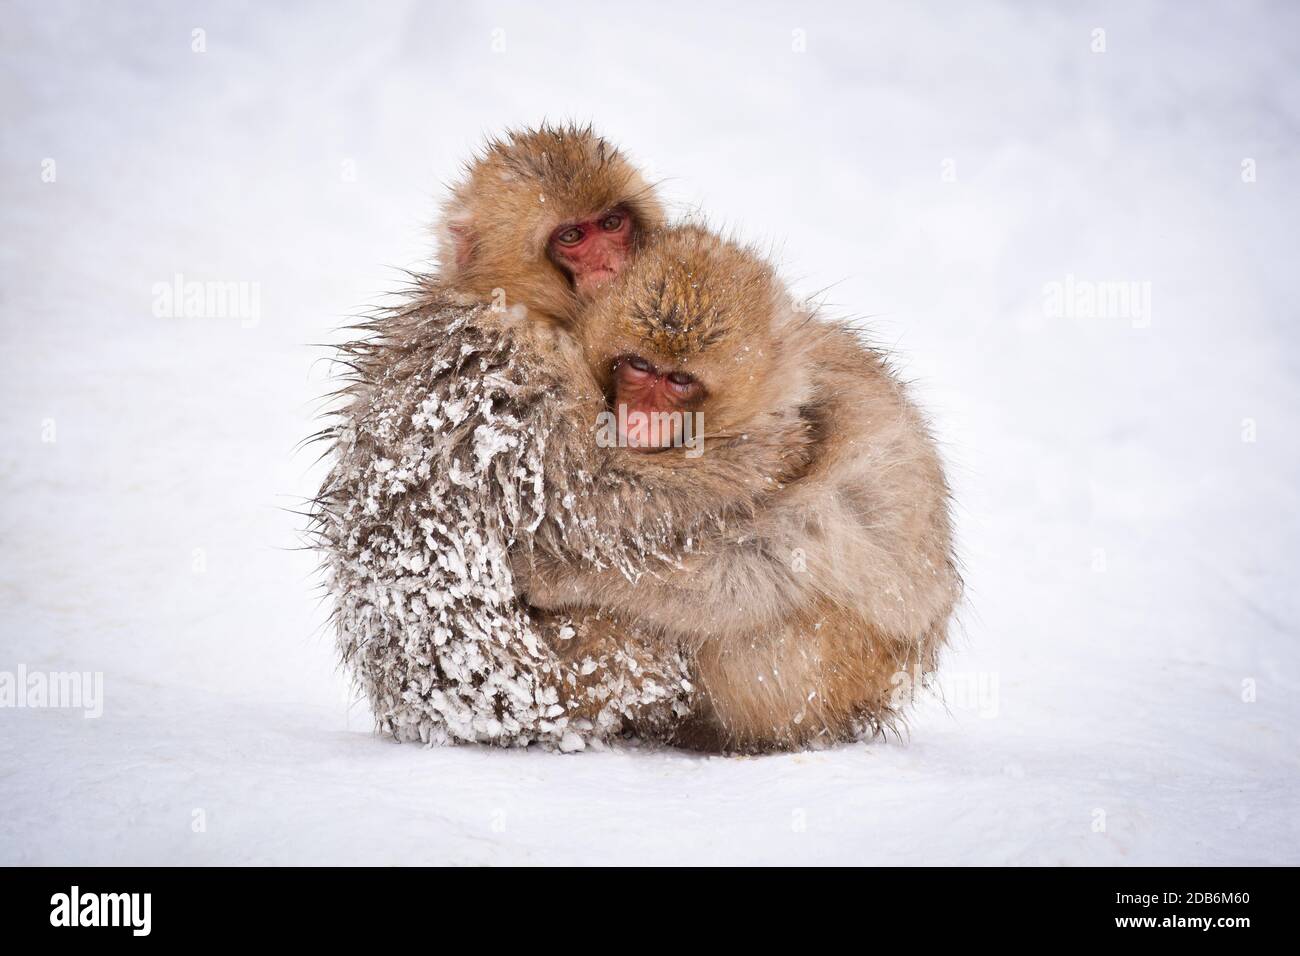 deux petits singes à neige bruns s'embrassant et se rangeant les uns les autres de la neige froide avec de la glace dans leur fourrure en hiver. Animaux sauvages montrant l'amour Banque D'Images